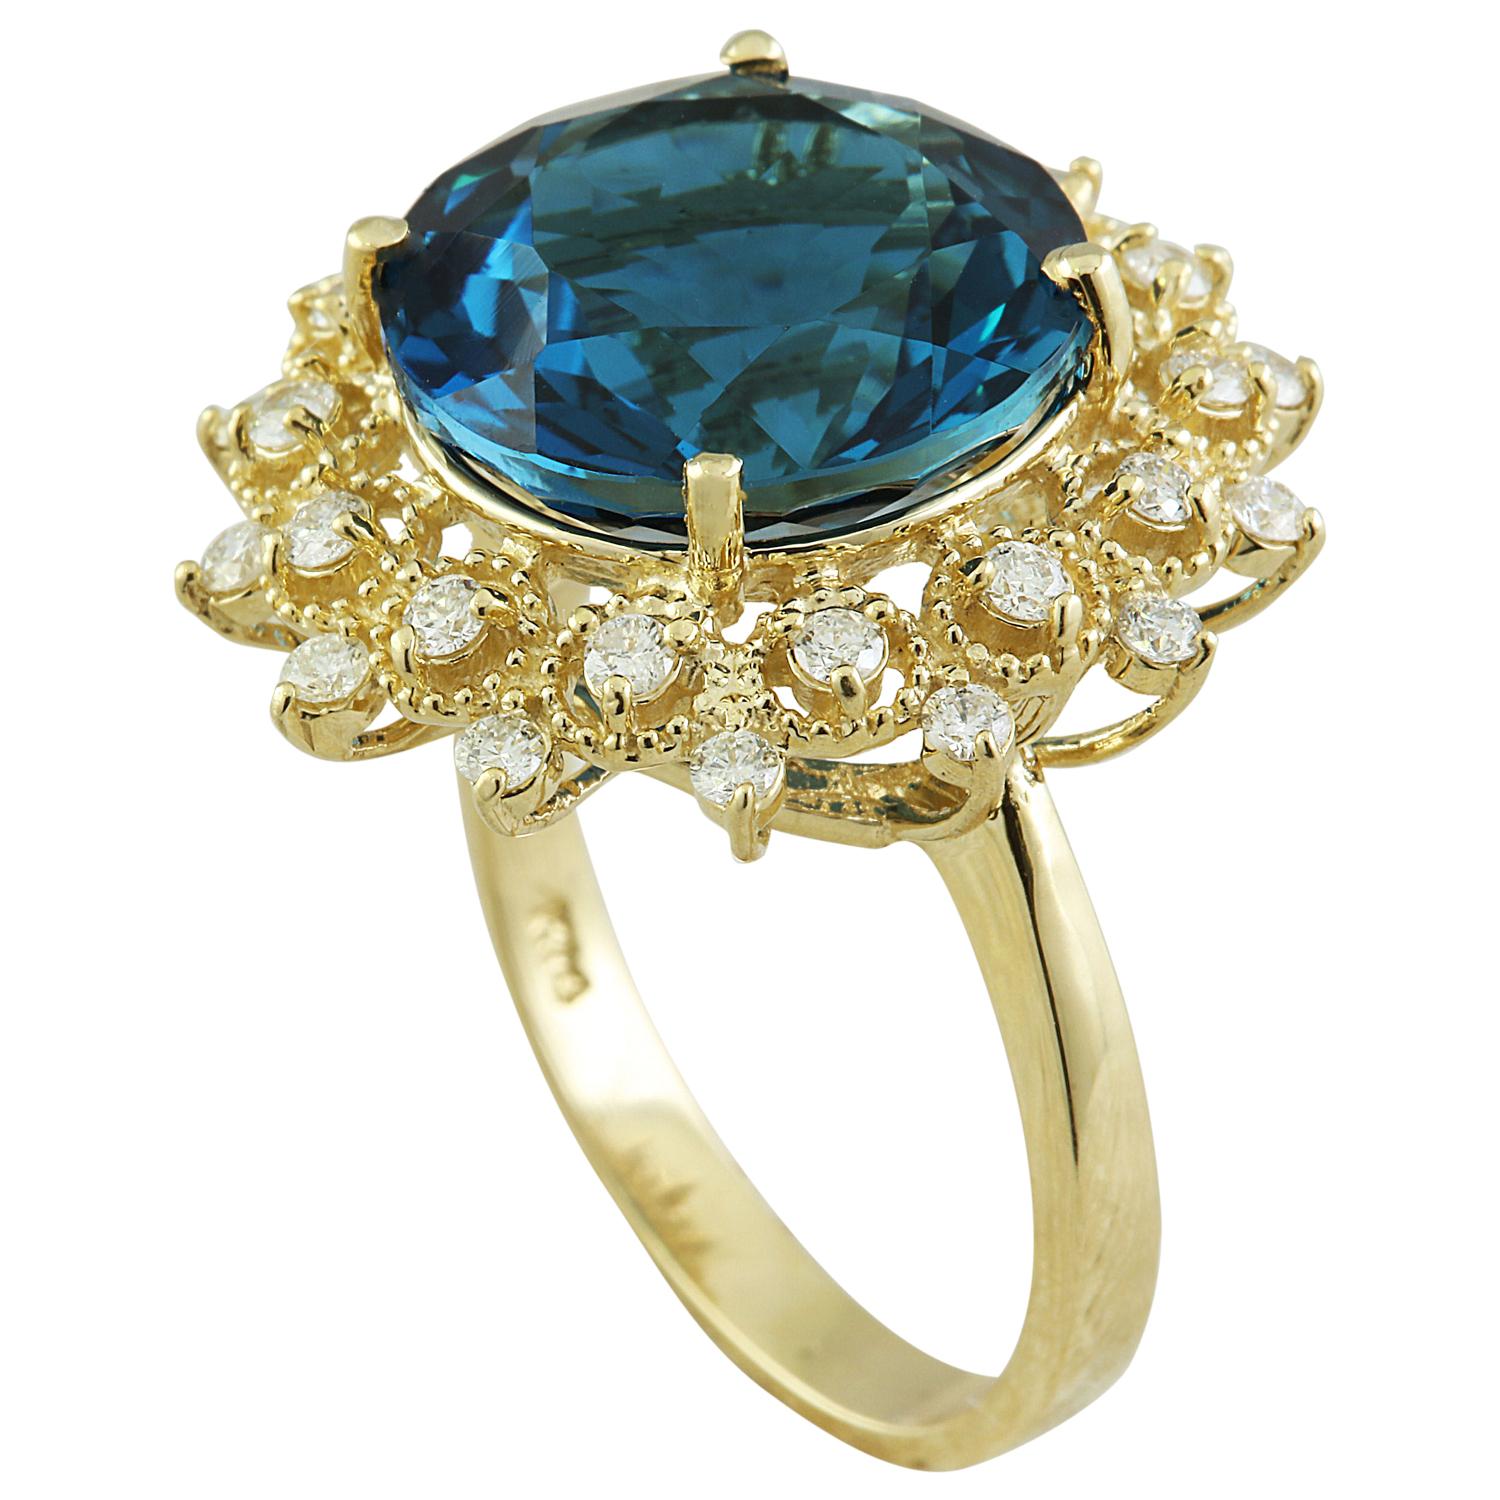 10.00 Carat Natural Topaz 14 Karat Solid Yellow Gold Diamond Ring
Estampillé : 14K 
Taille de l'anneau : 7 
Poids total de l'anneau : 5,1 grammes
Poids de la topaze : 9,50 carats (13,00x13,00 millimètres) 
Poids du diamant : 0,50 carat (couleur F-G,